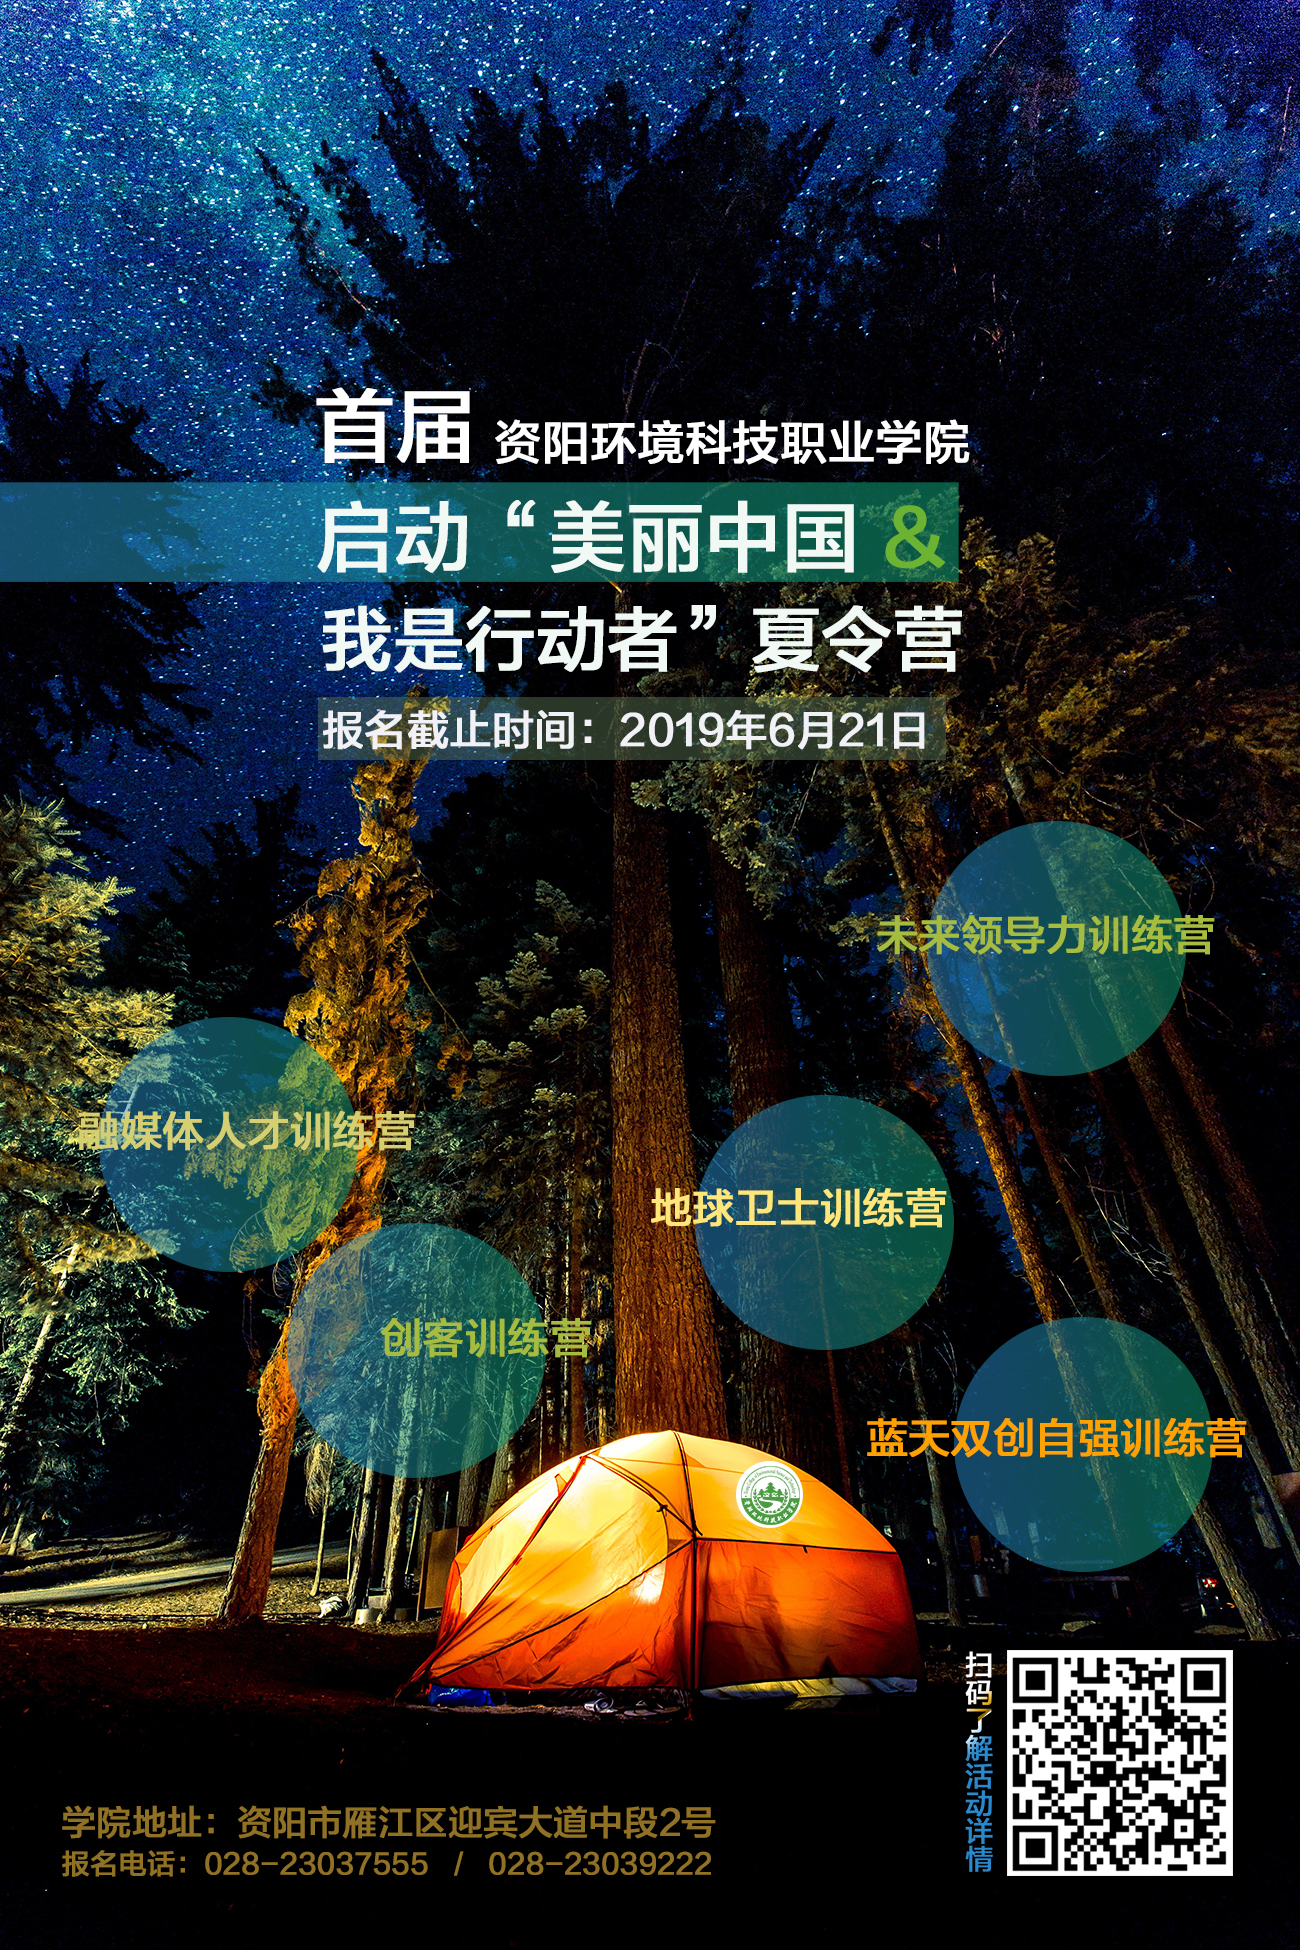 <font color='#0033CC'>资阳环境科技职业学院关于“美丽中国 我是行动者”夏令营追加计划的公告</font>